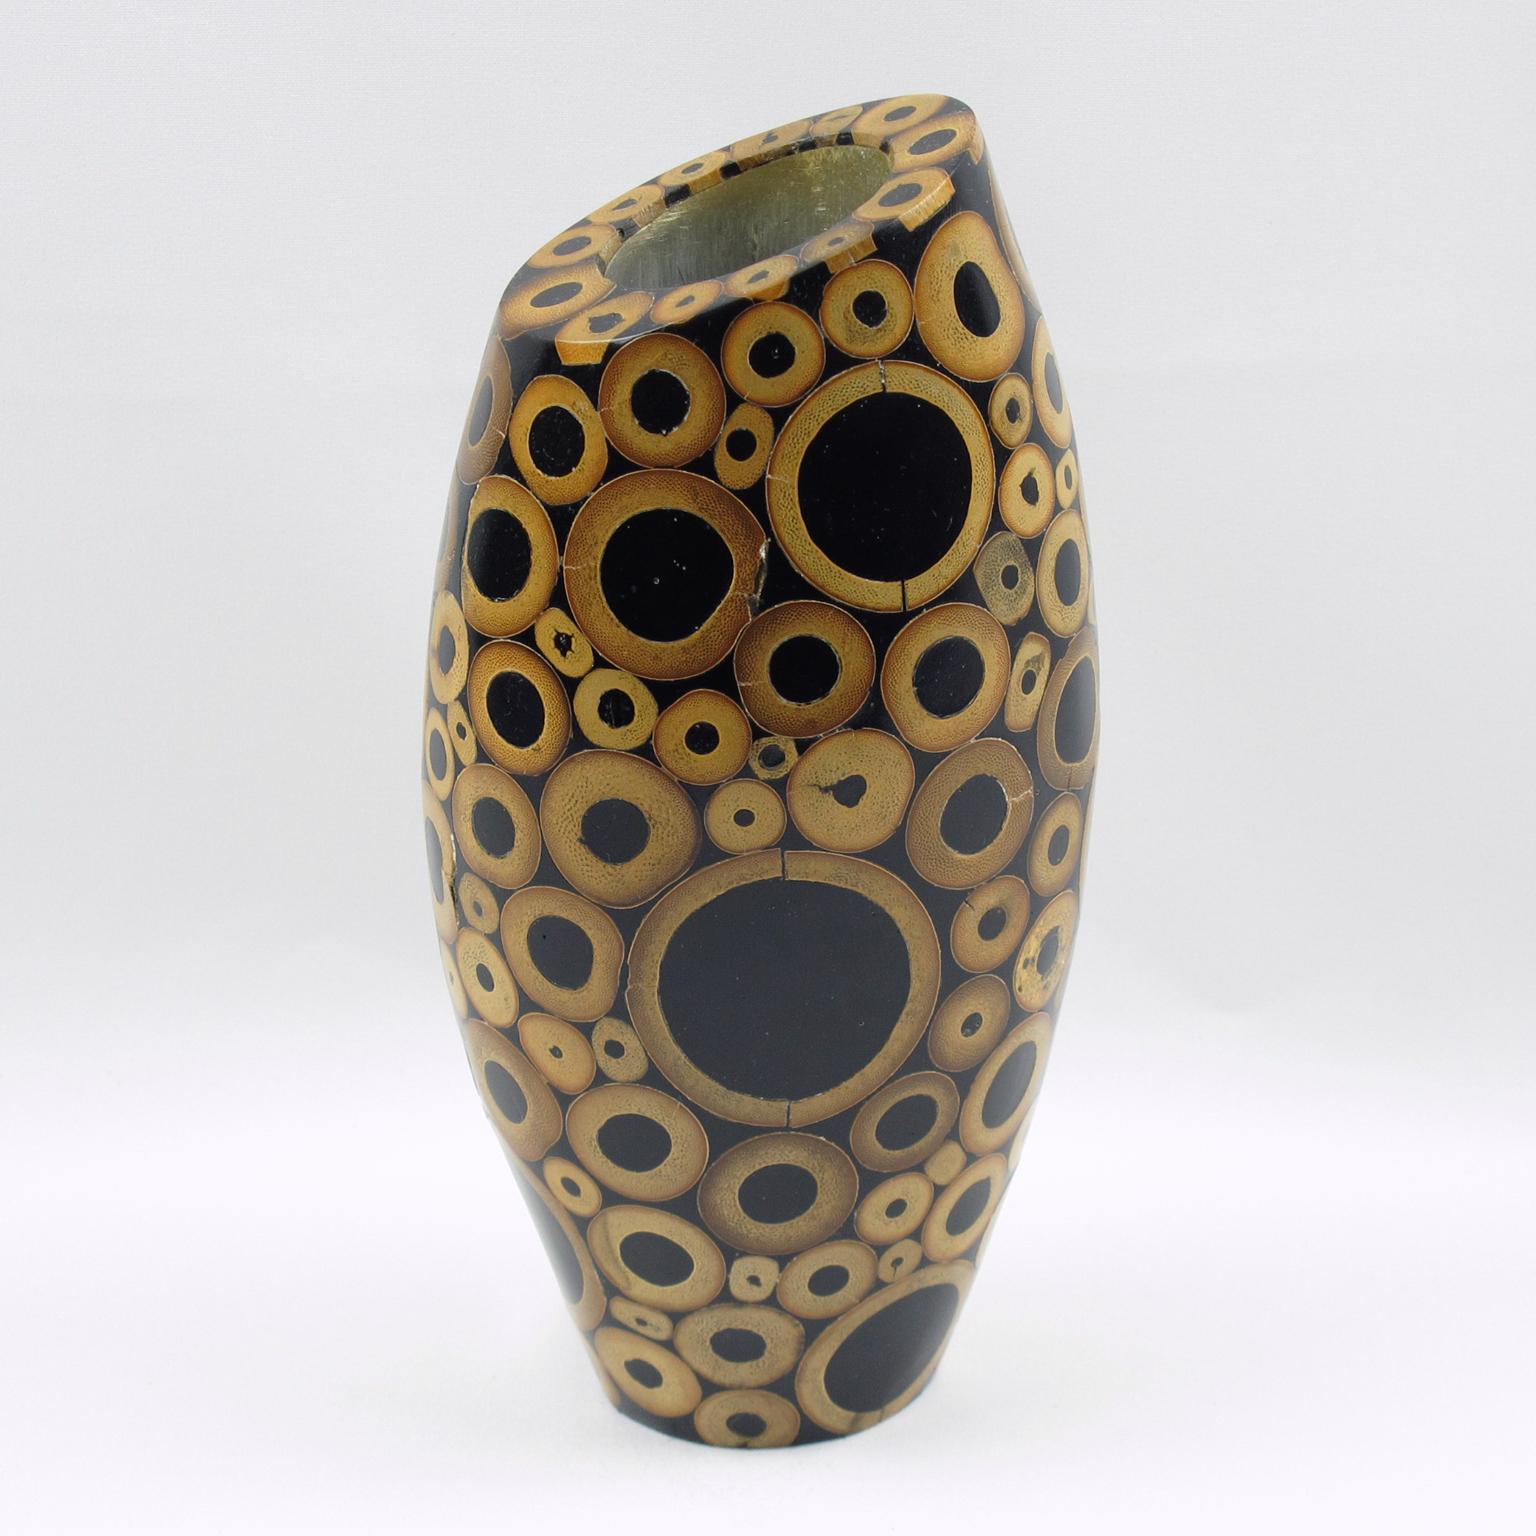 Joli vase sculptural incurvé avec marqueterie de bois et de bambou, conçu et produit par le célèbre cabinet d'arts décoratifs Ria & Youri Augousti, Paris. Une pièce datant des années 1990. Marquage en dessous : 